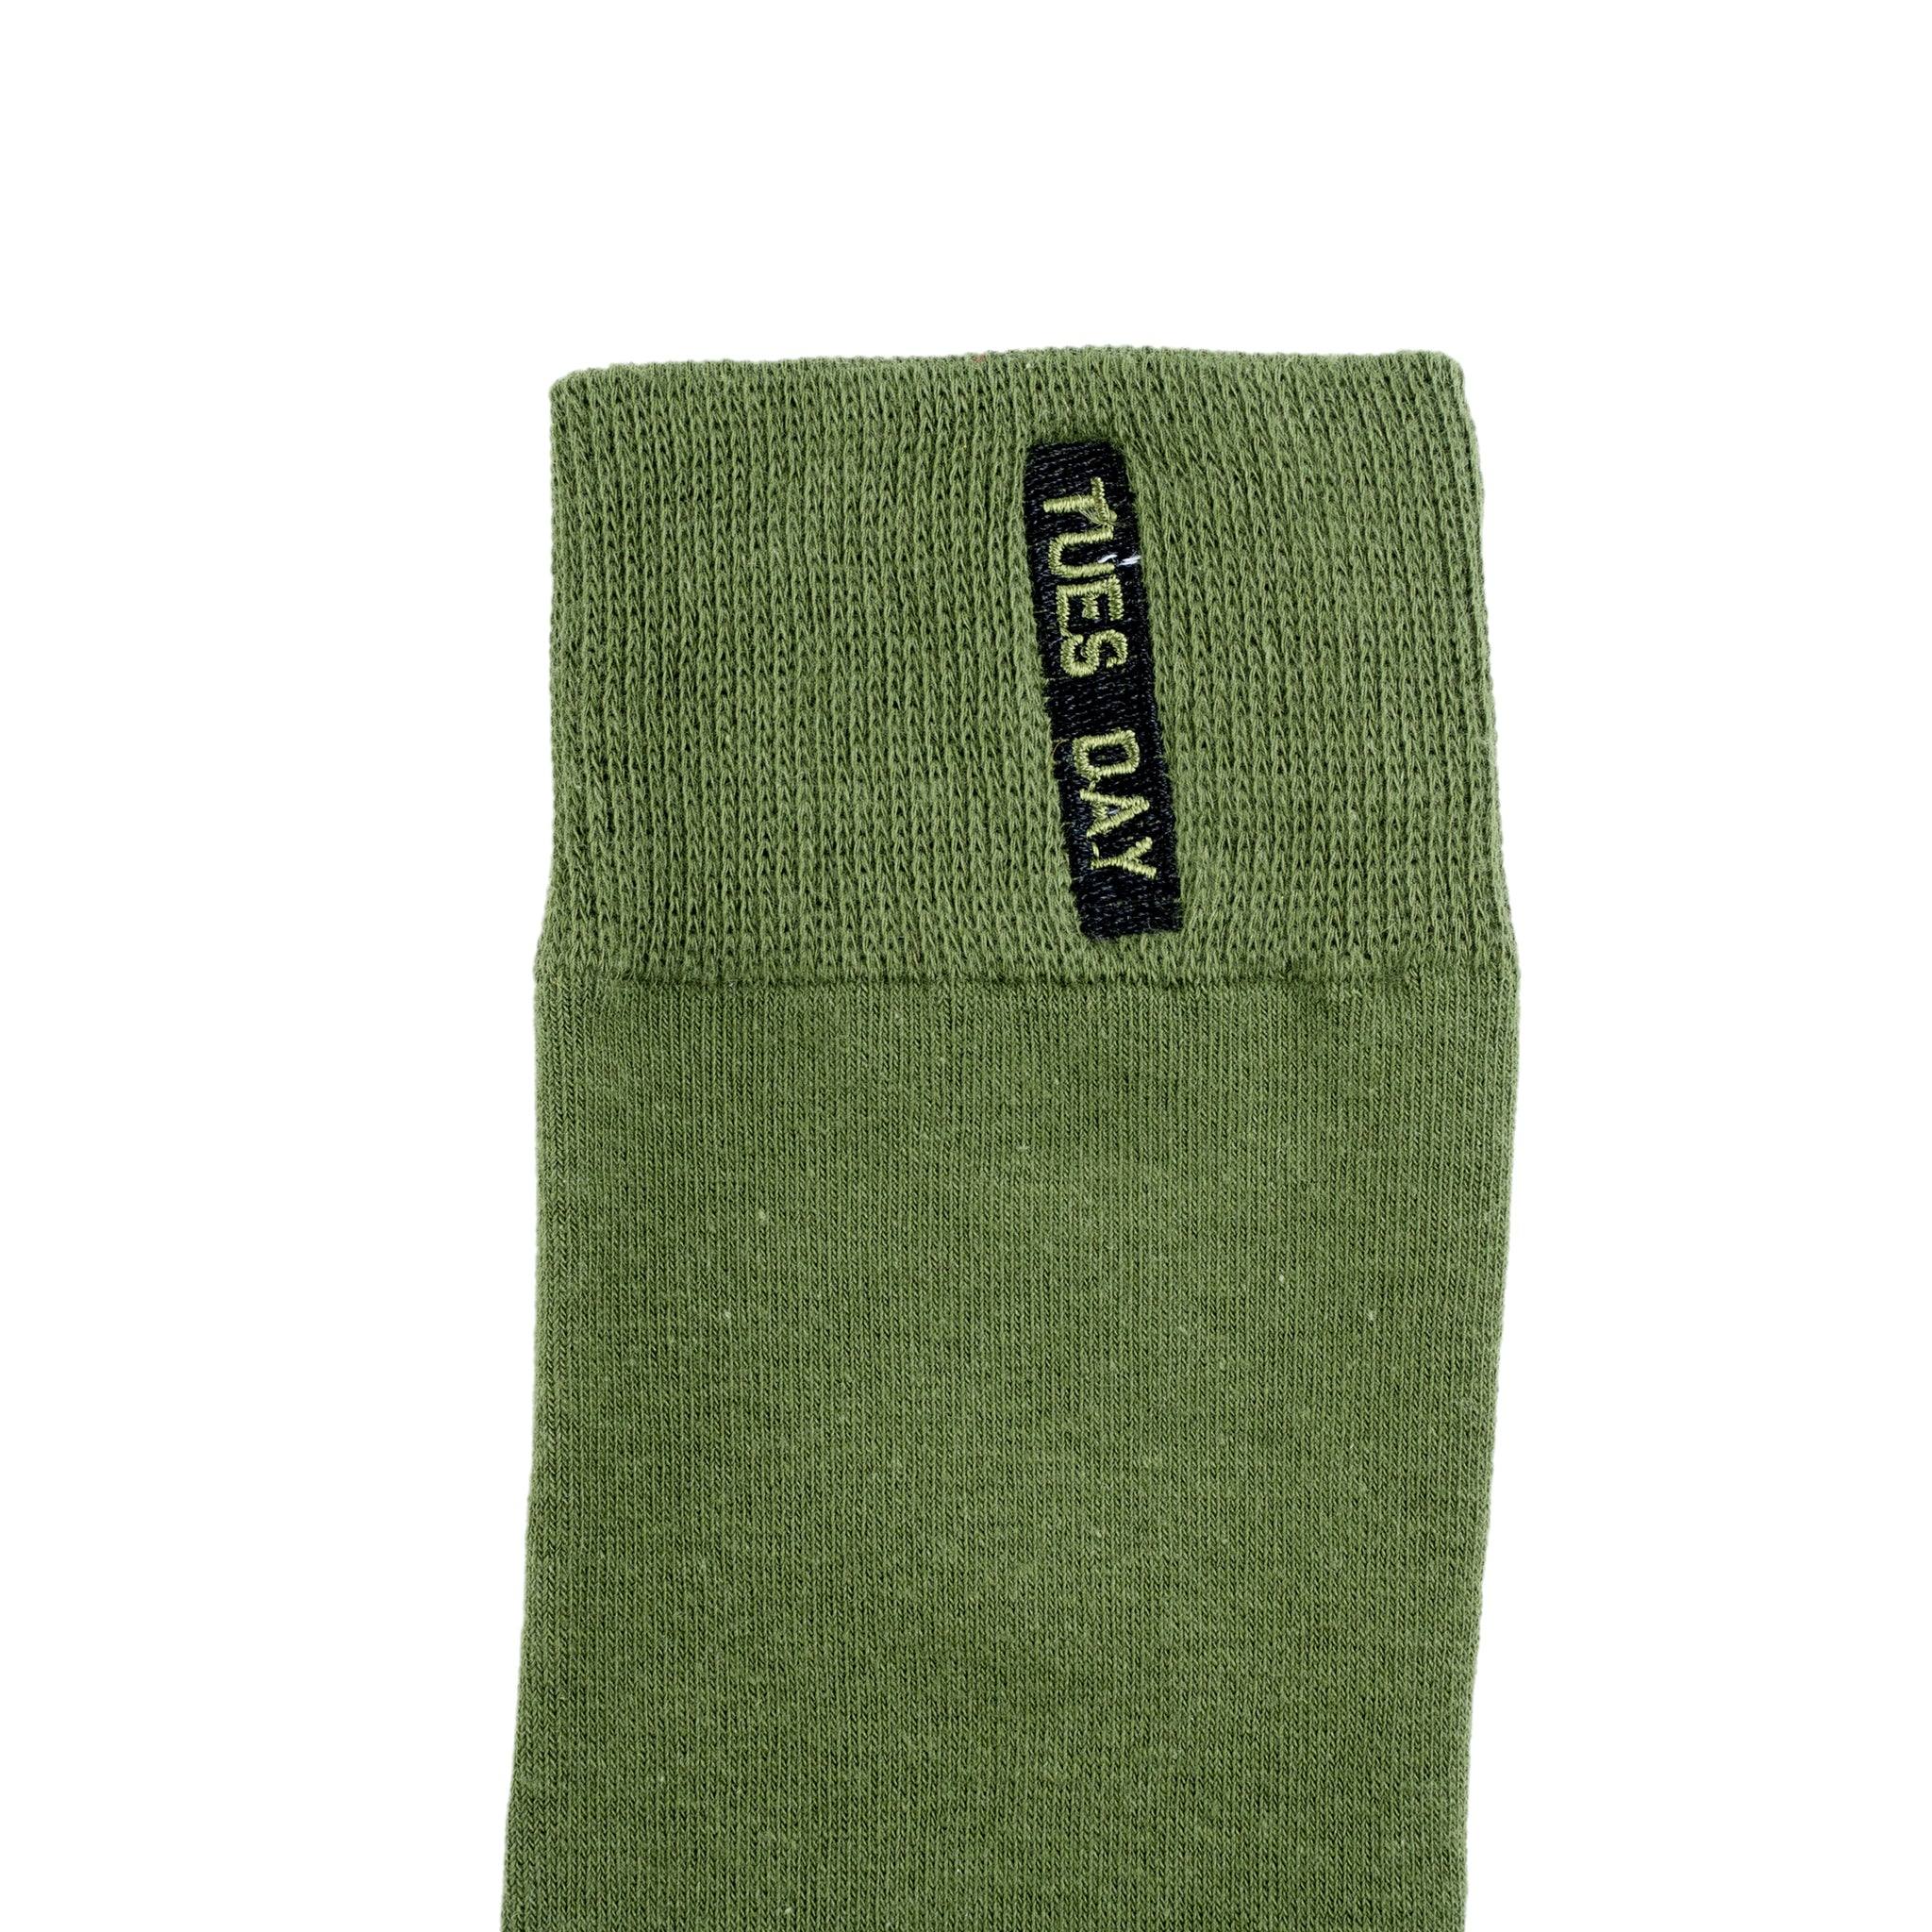 Chokore Stylish Cotton Socks (Green)